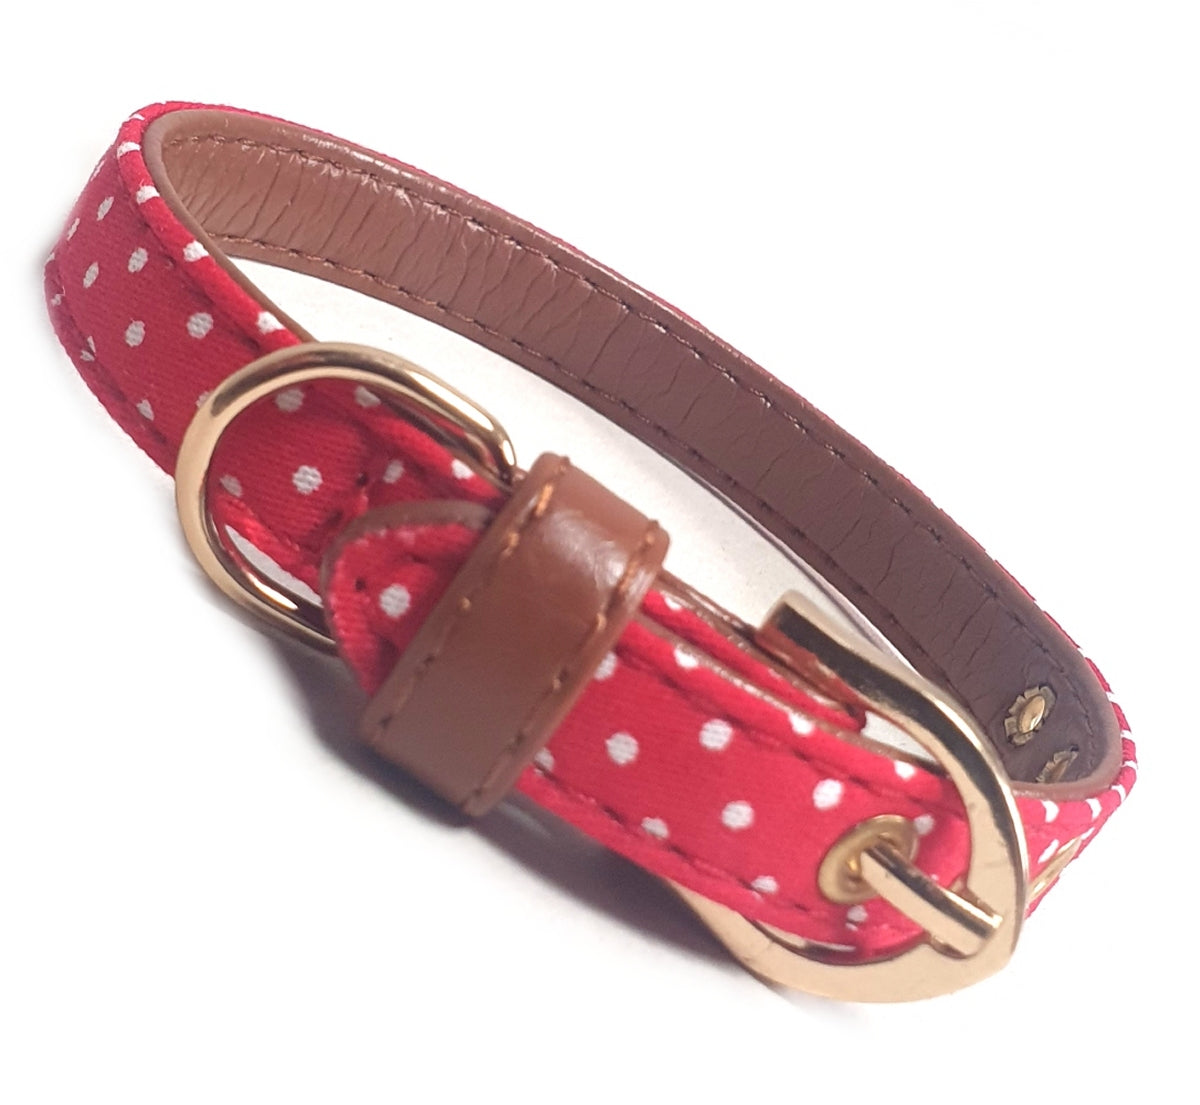 Polka Dot Fabric Dog Collar - Red